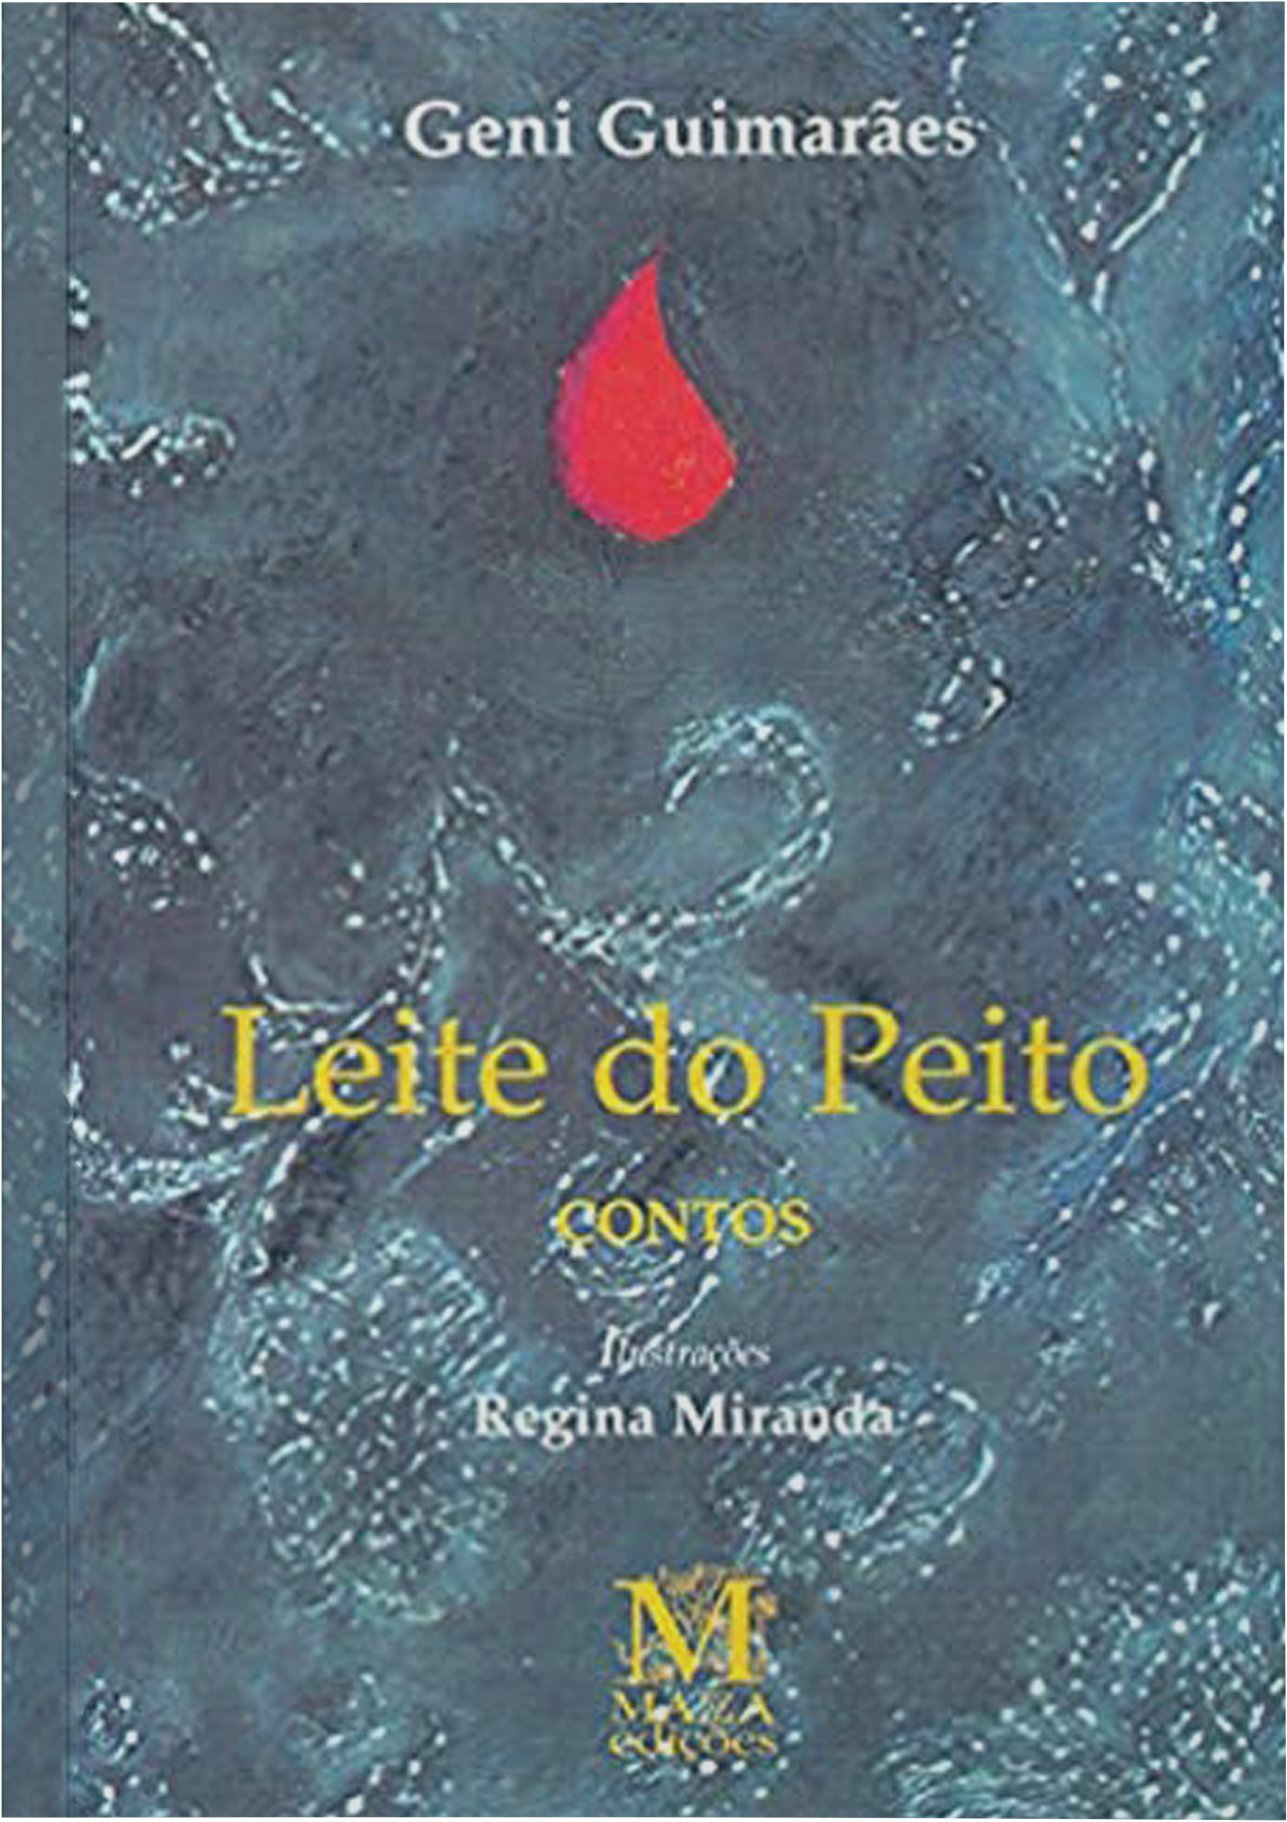 Leite do peito. São Paulo: Fundação Nestlé de Cultura, 1988. 2 ed. 1989 (contos).